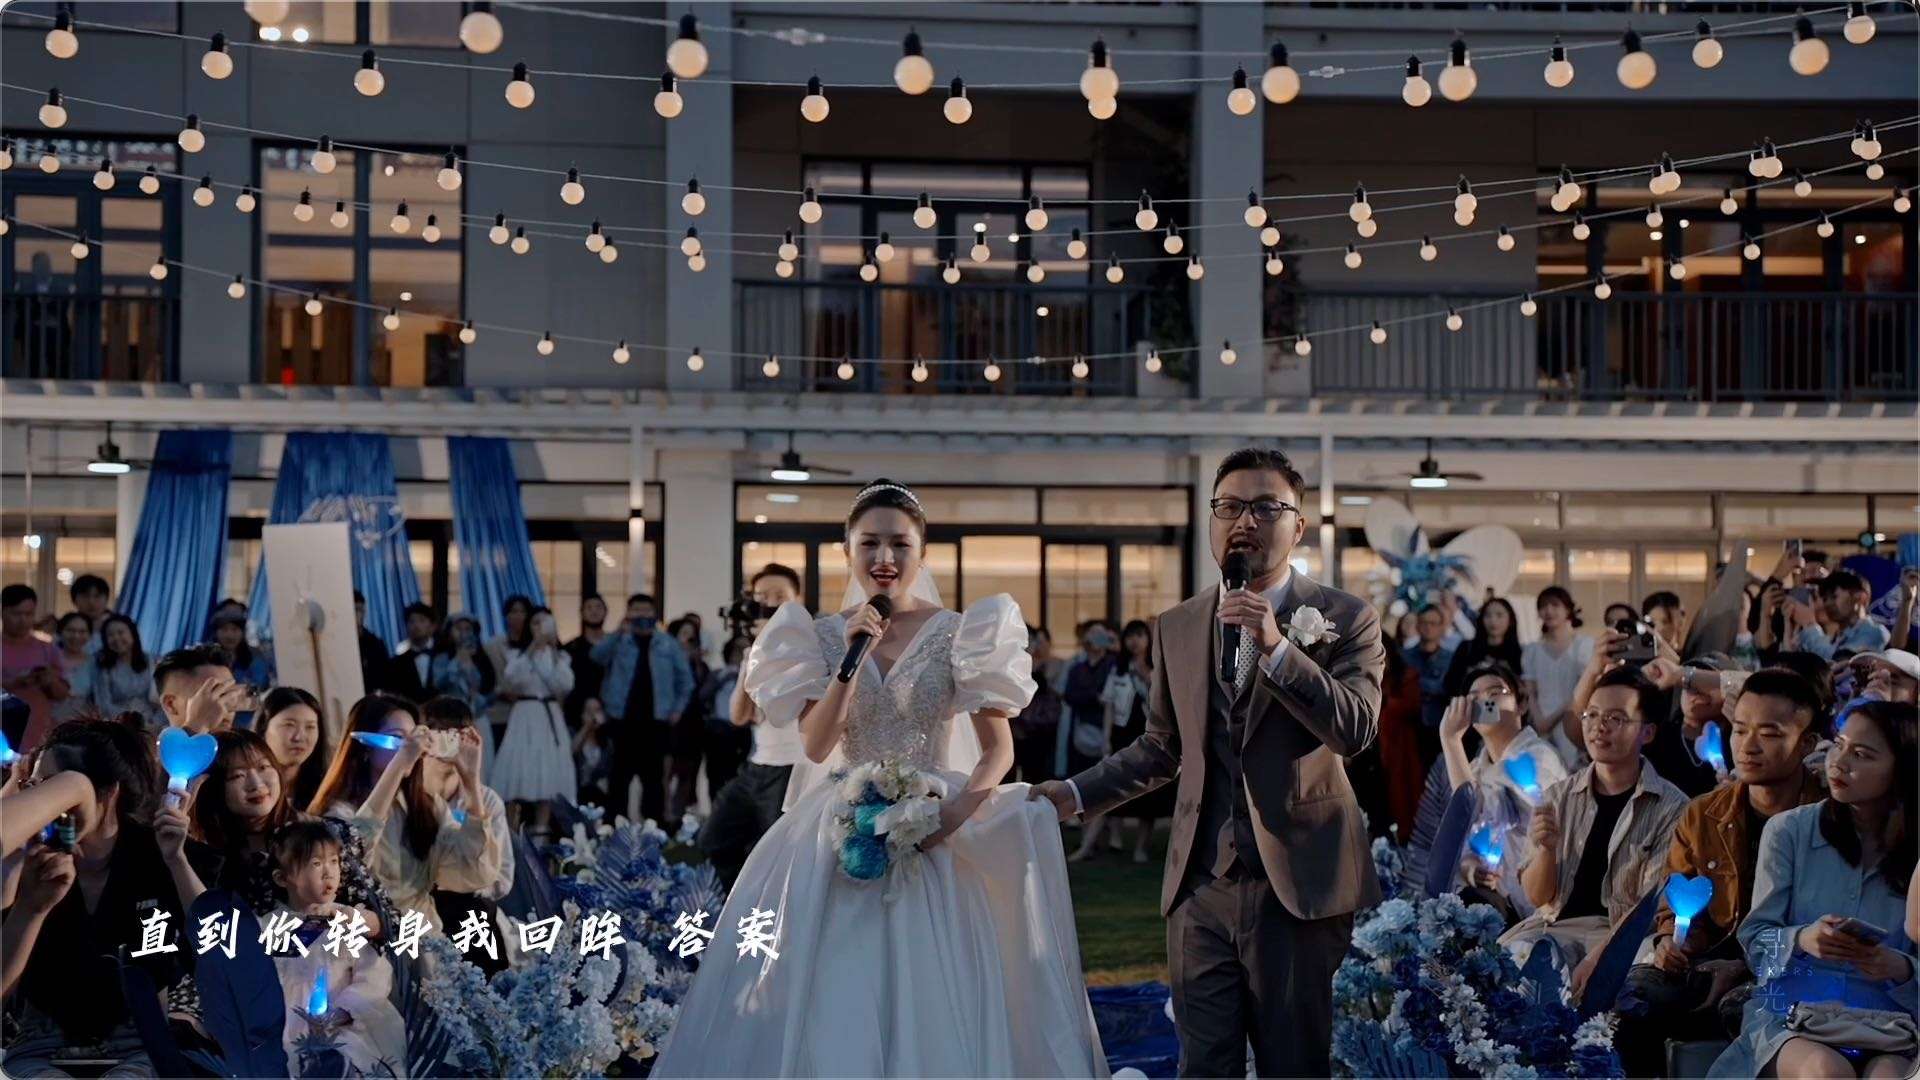 爱情的摸样——婚礼MV